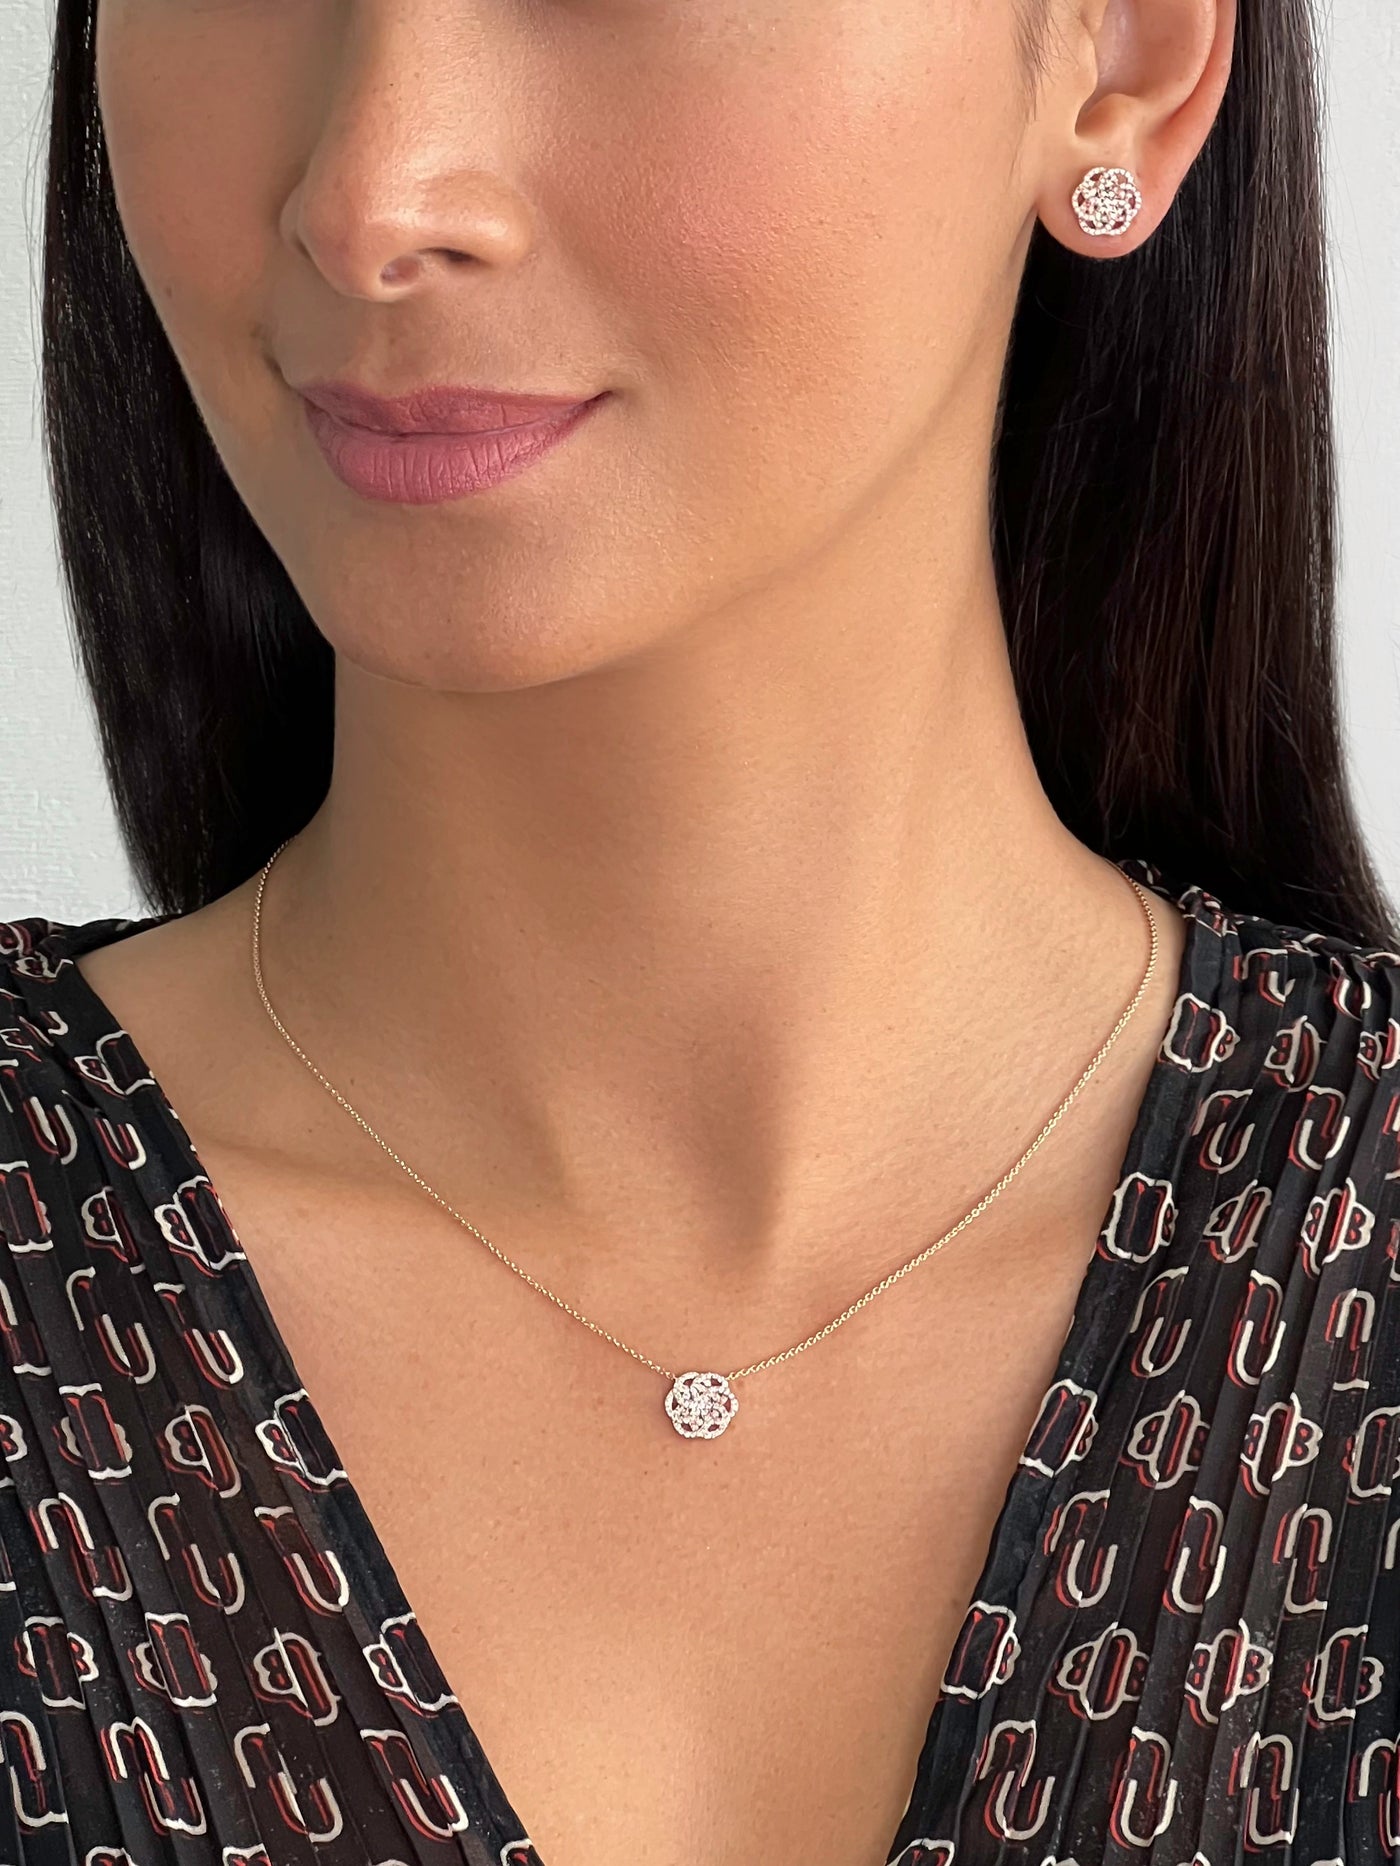 Pave Set Diamond Flower of Life Earrings in 18k Rose Gold